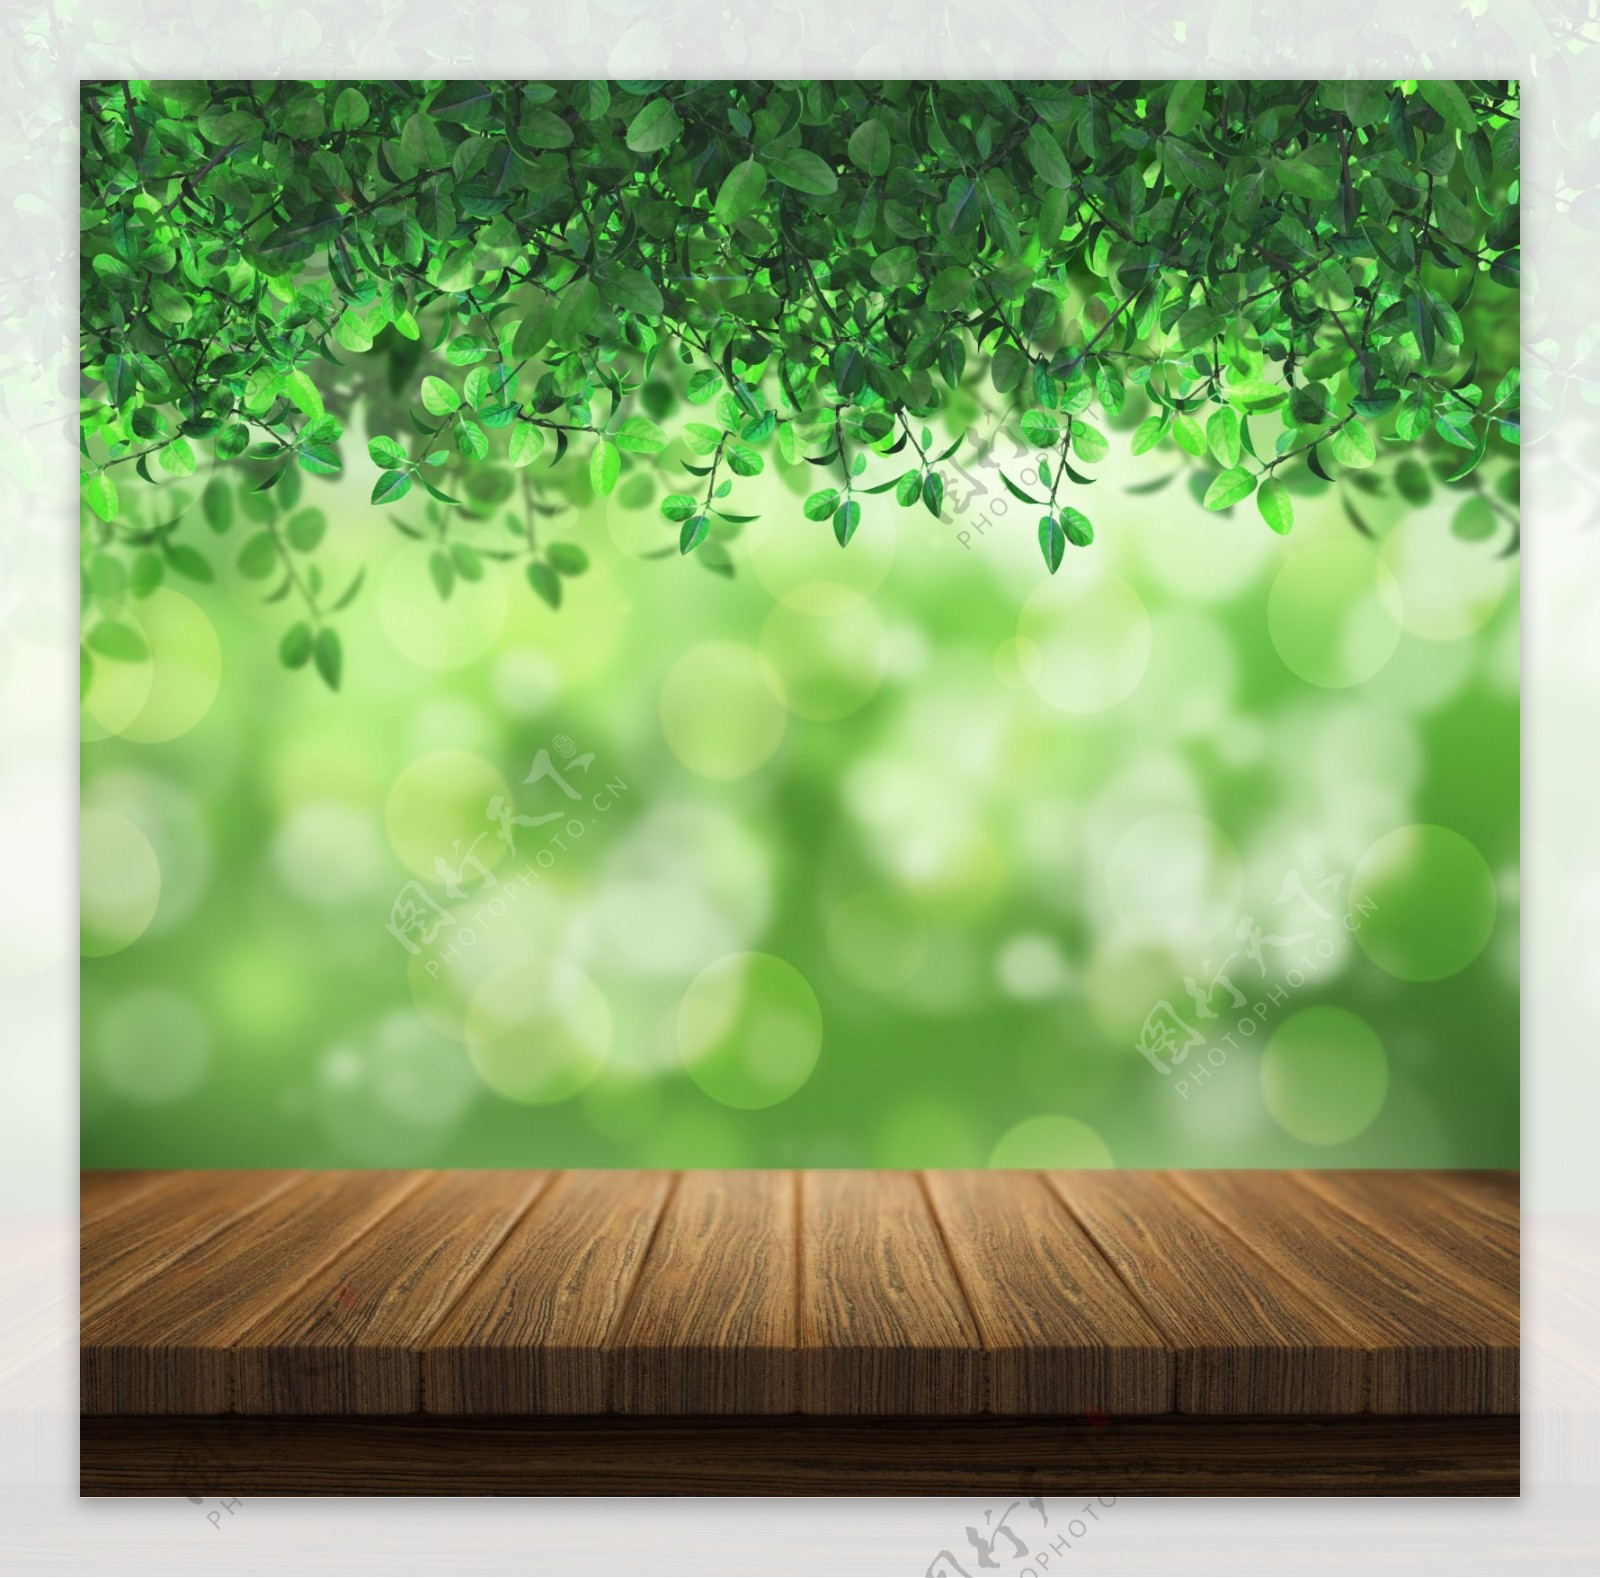 主图背景春天环保绿色夏季木纹木质台子